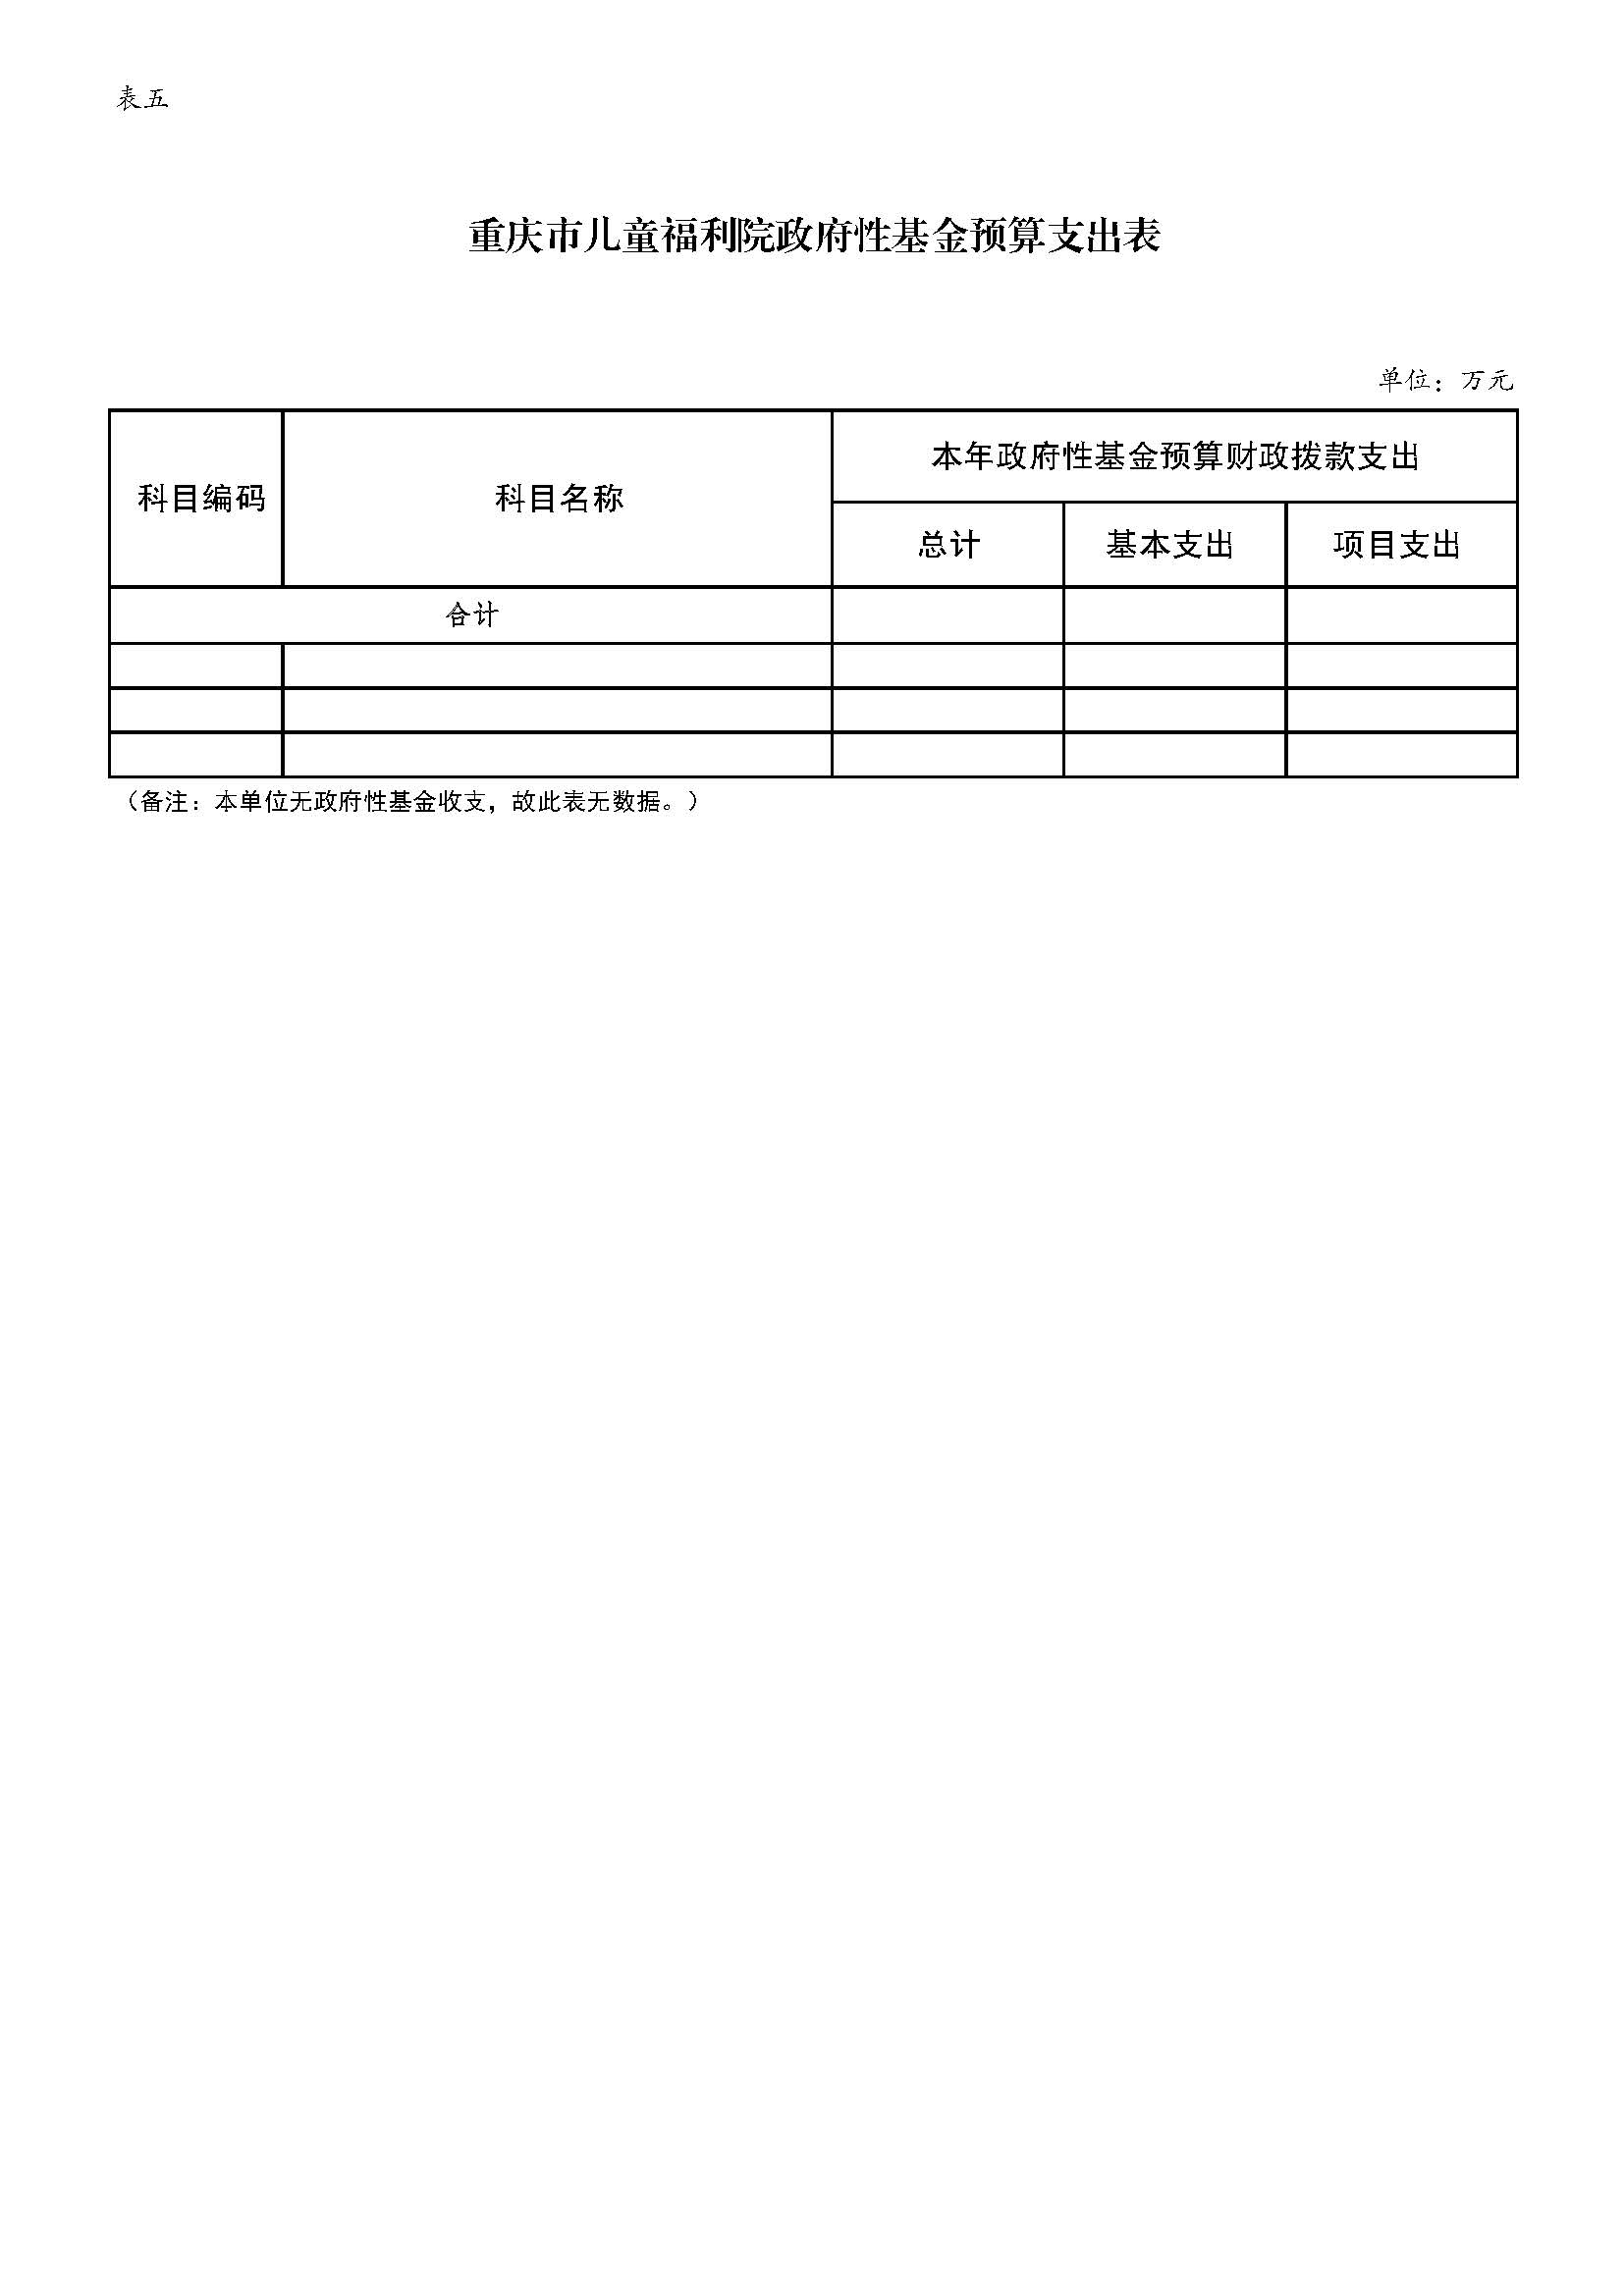 重庆市儿童福利院2022年预算公开_页面_11.jpg